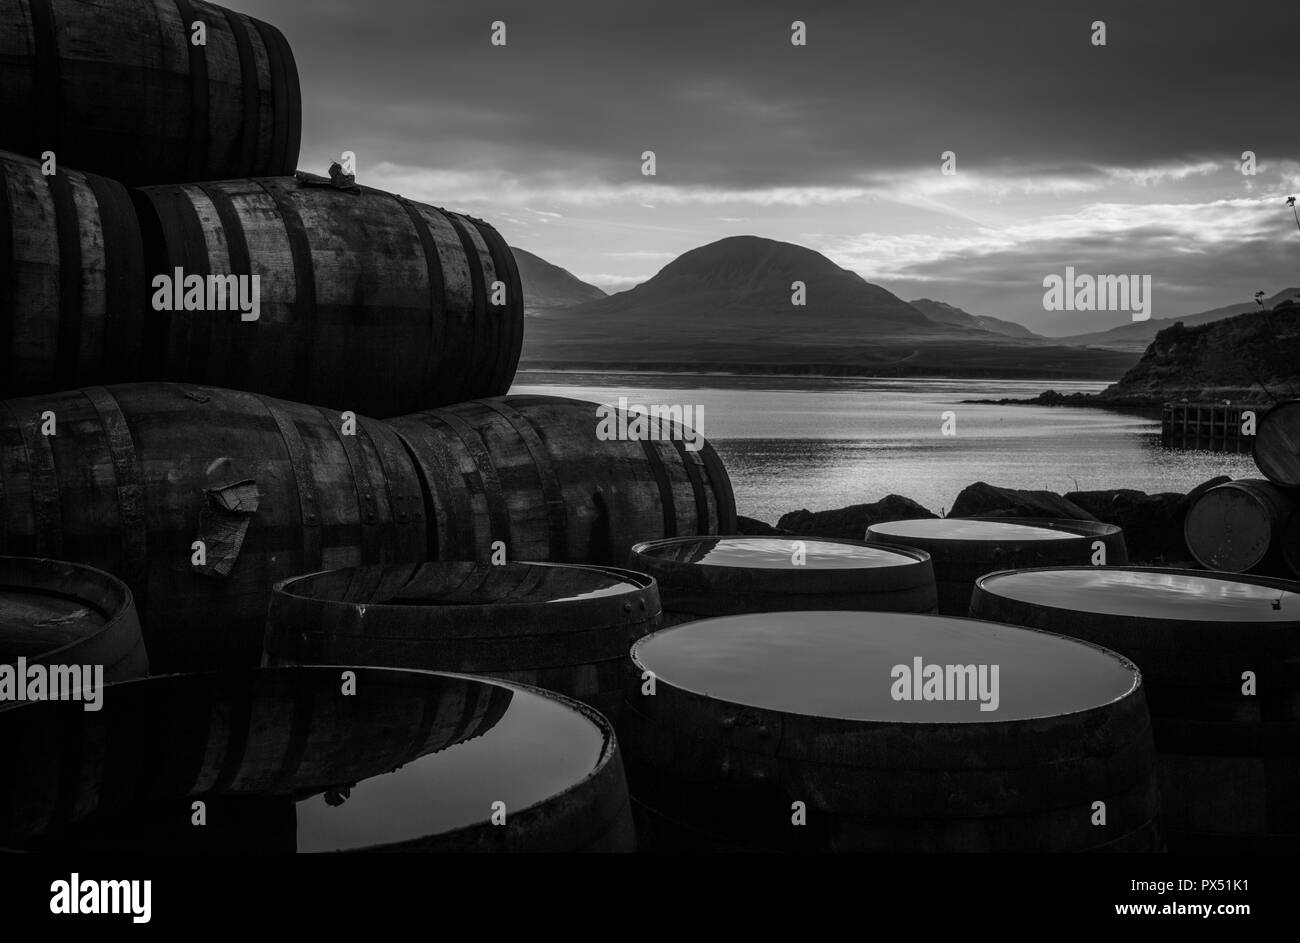 Bunnahabhain whisky distillery, looking towards the Paps of Jura, in Bunnahabhain, Scotland. Stock Photo